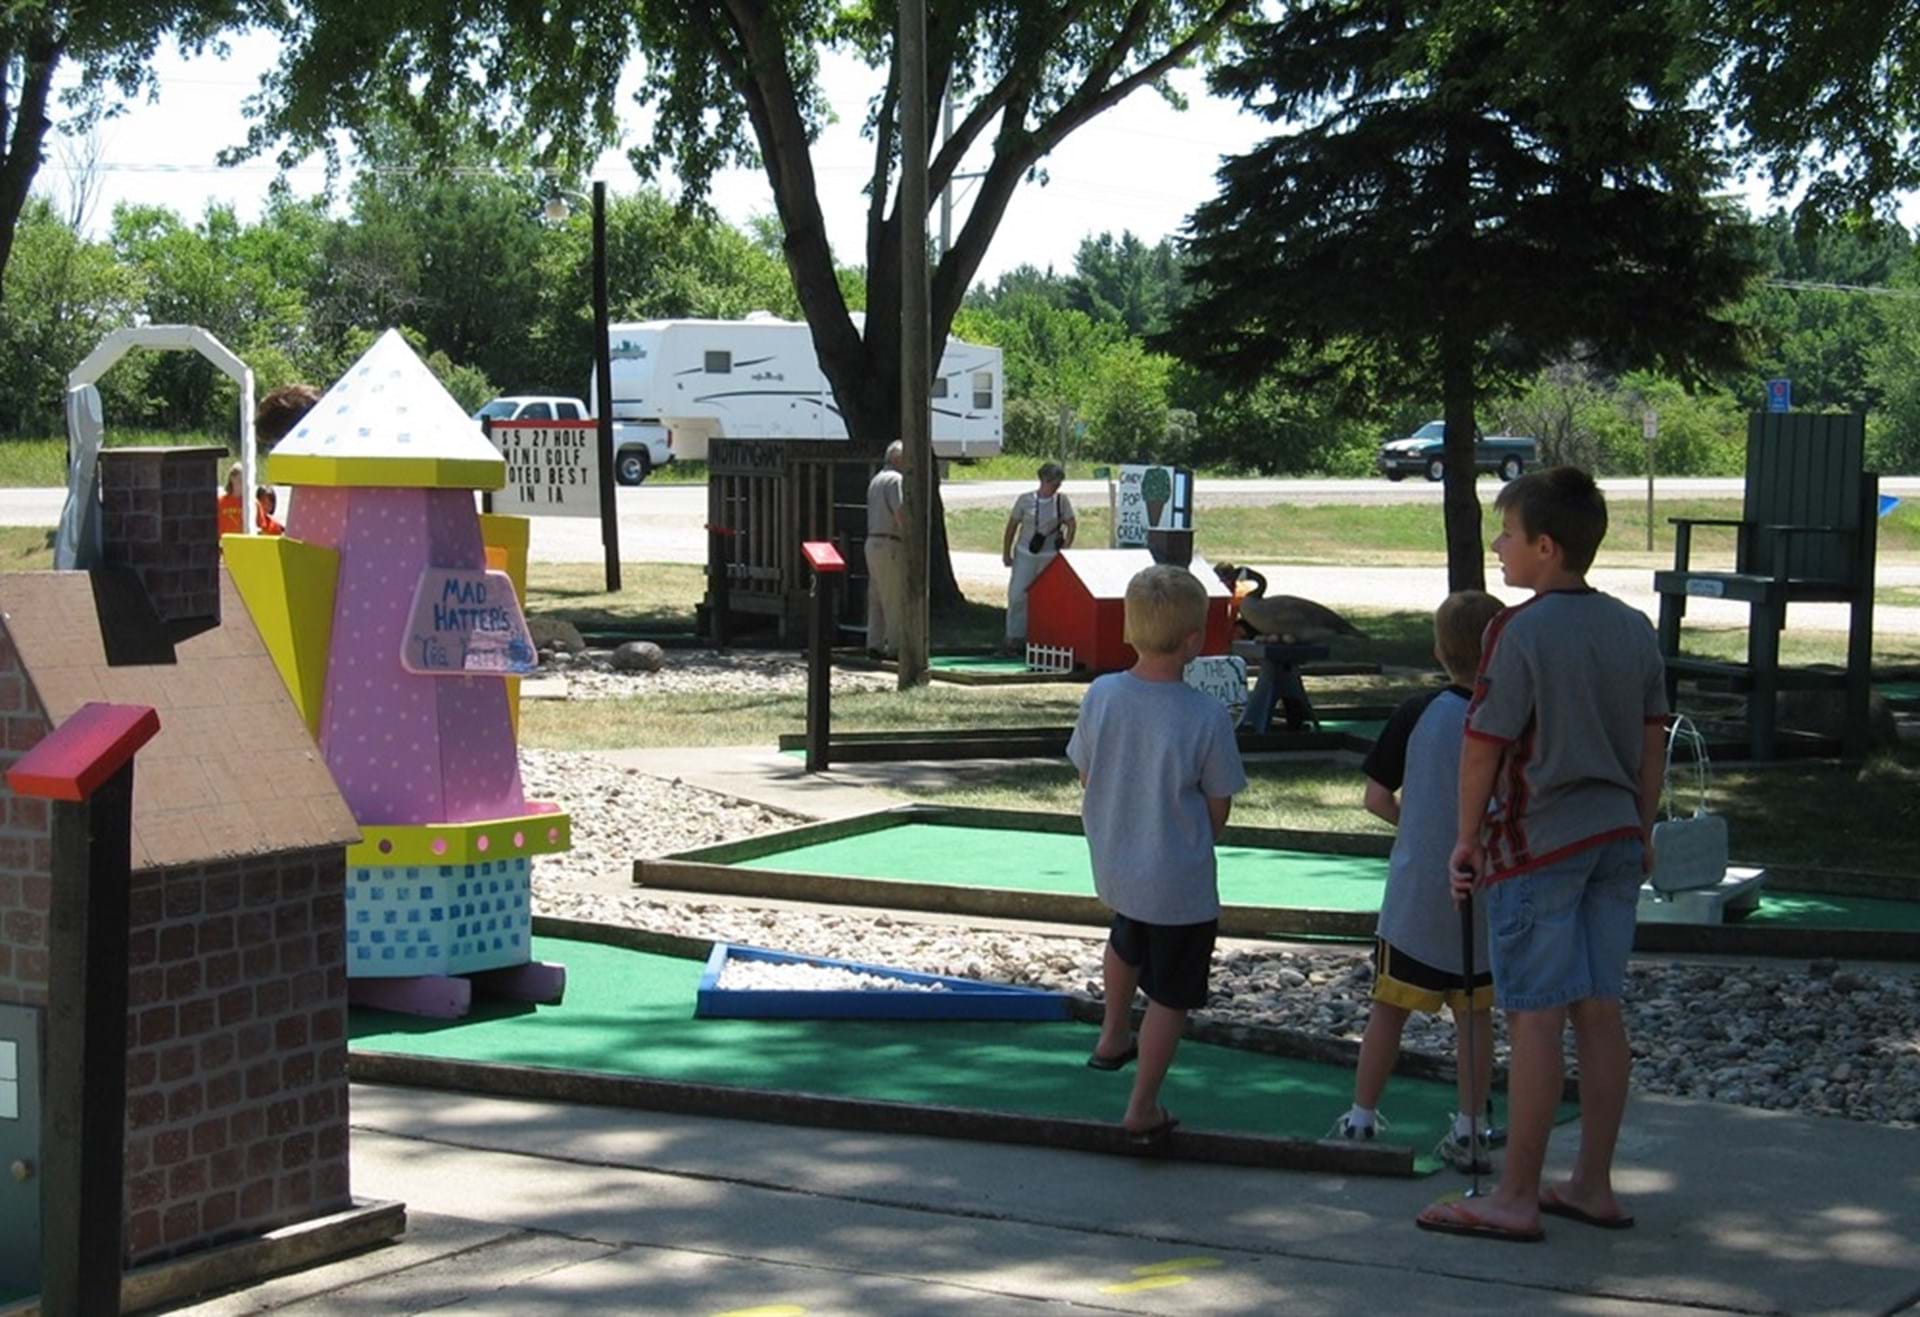 Family fun at the 27 Hole Mini Golf!